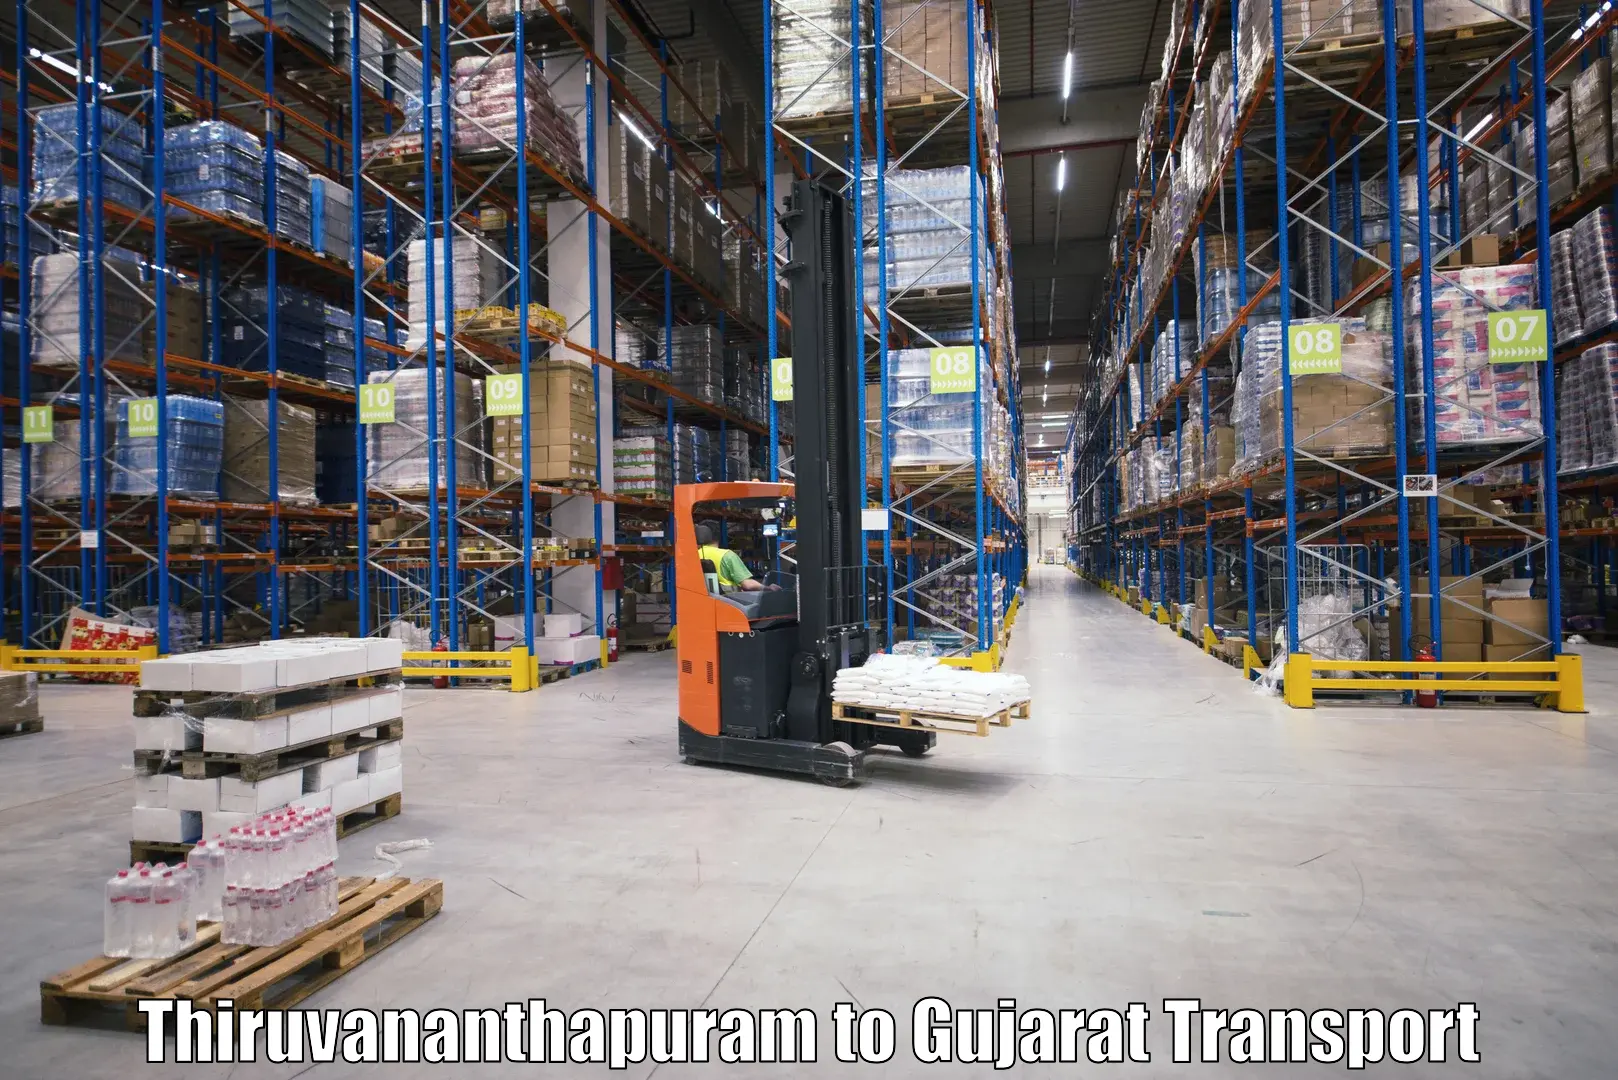 Container transport service in Thiruvananthapuram to Gujarat